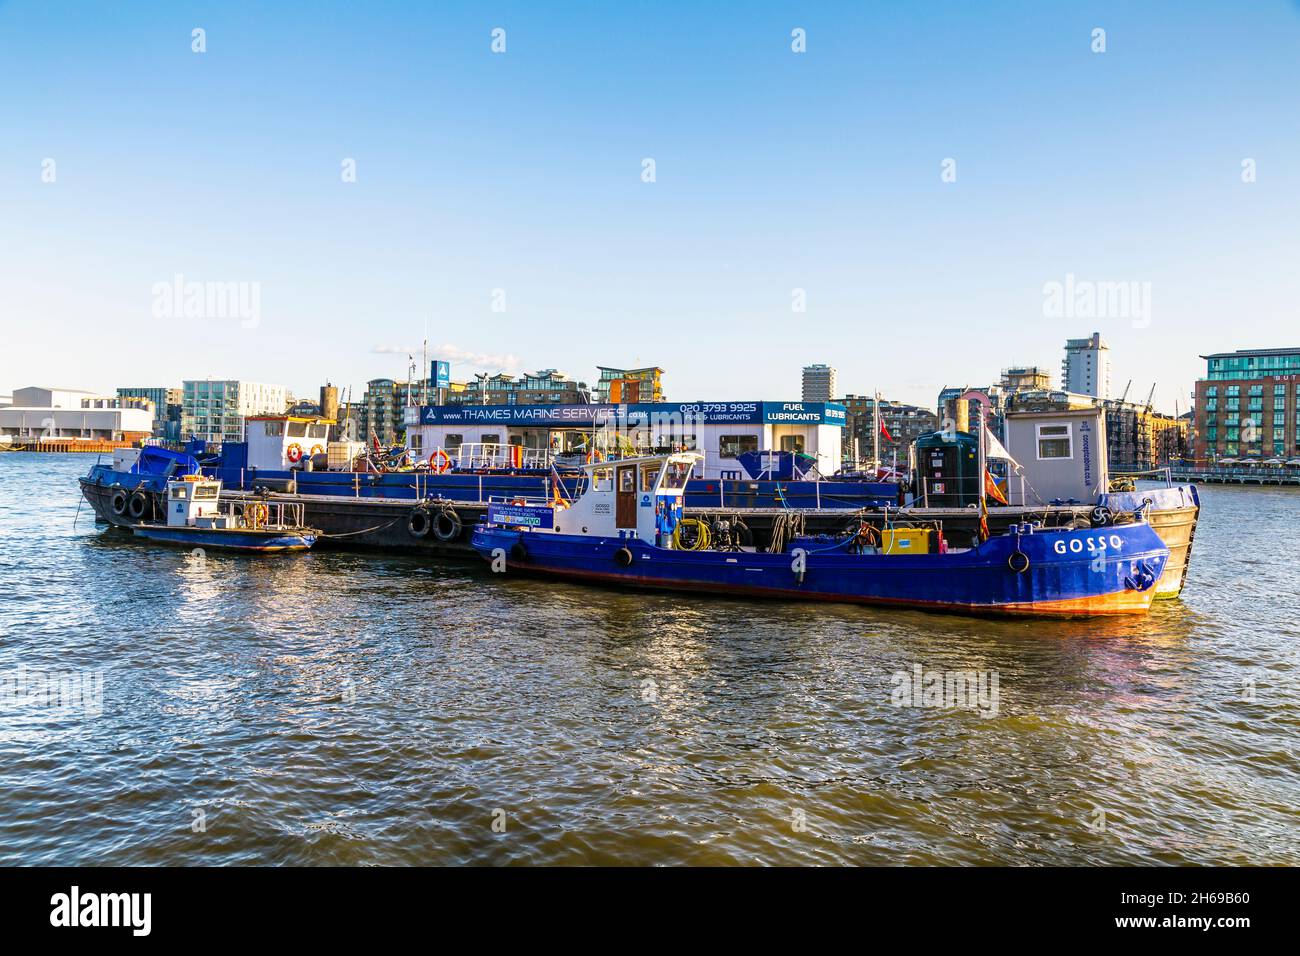 Die Thames Marine Services liefern Treibstoff für Boote auf der Themse, die in der Nähe von Wapping, London, Großbritannien, verankert sind Stockfoto